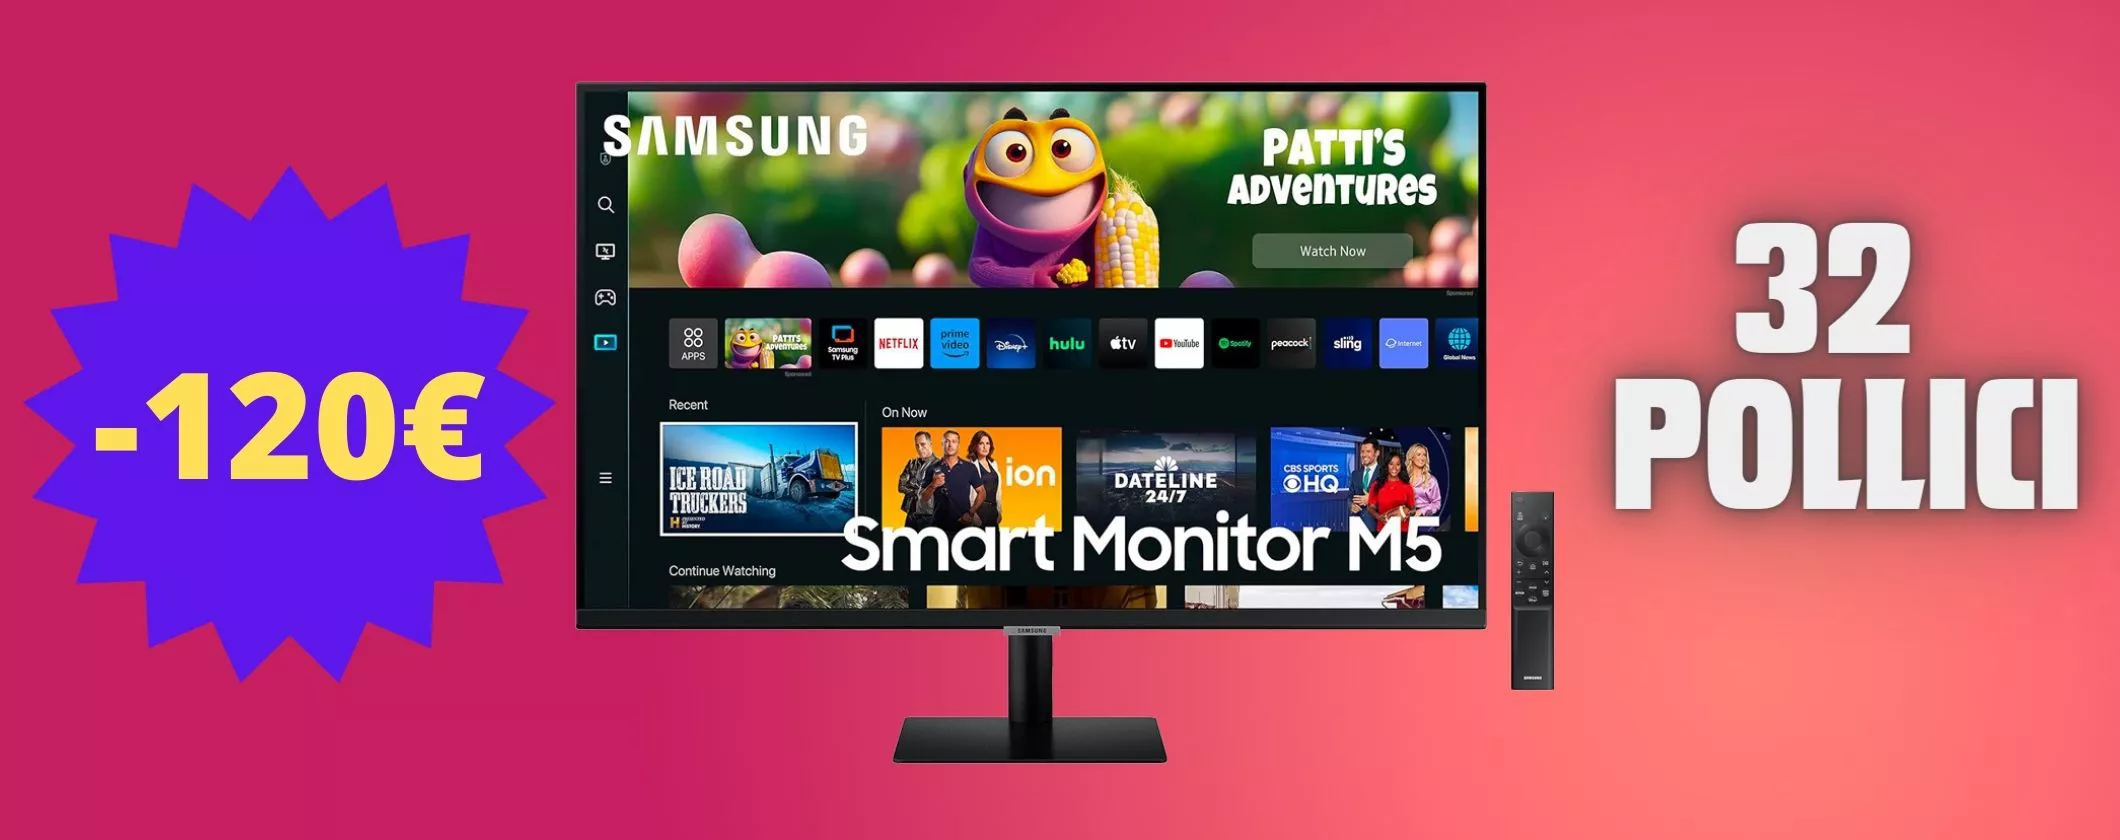 Monitor Samsung M5 a 120€ in meno: HDR10 e casse integrate